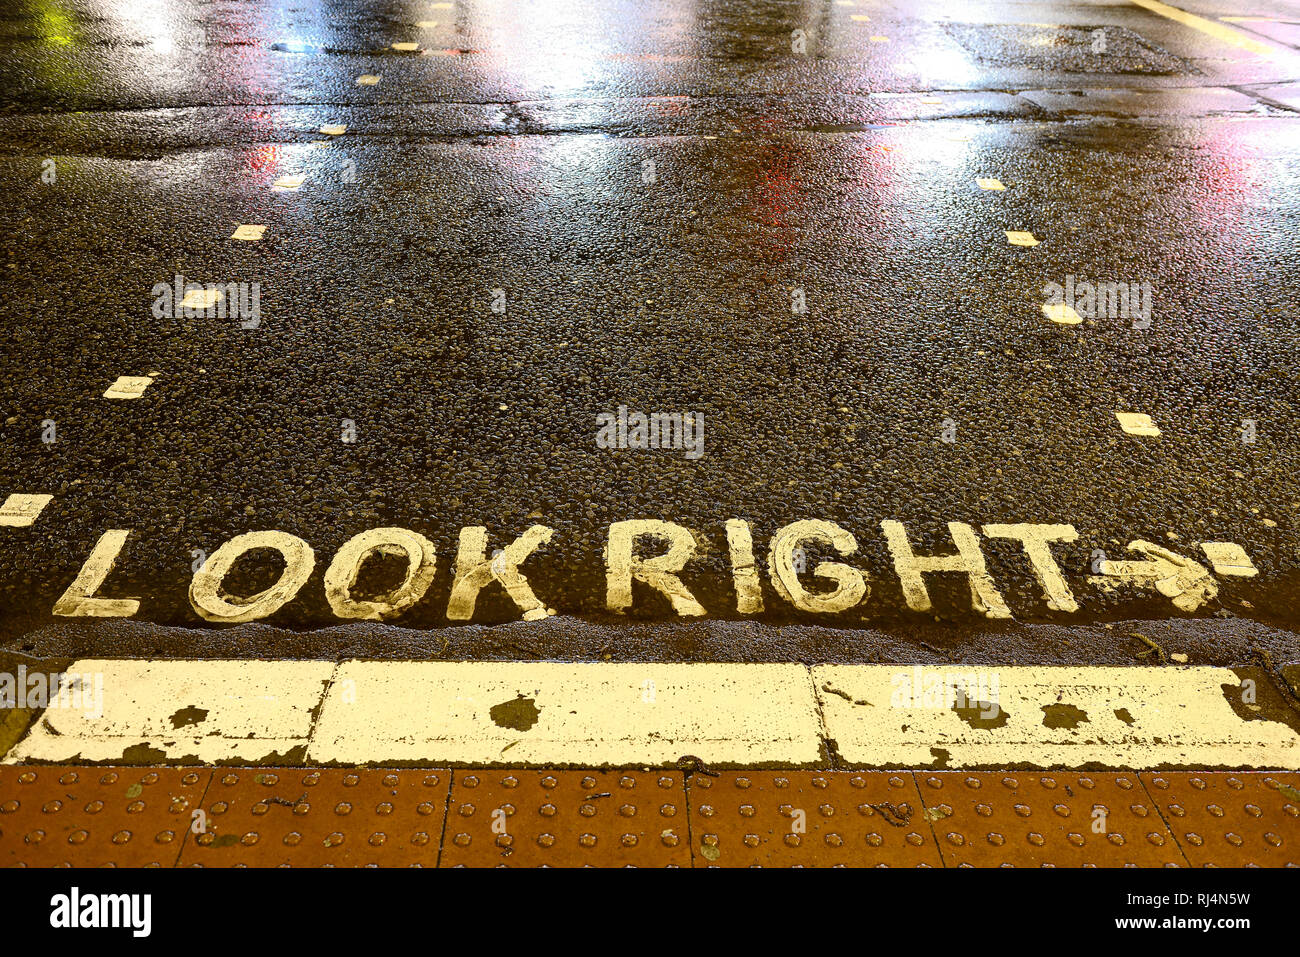 Straßenmarkierung auf einer regennassen Strasse, look right Stock Photo